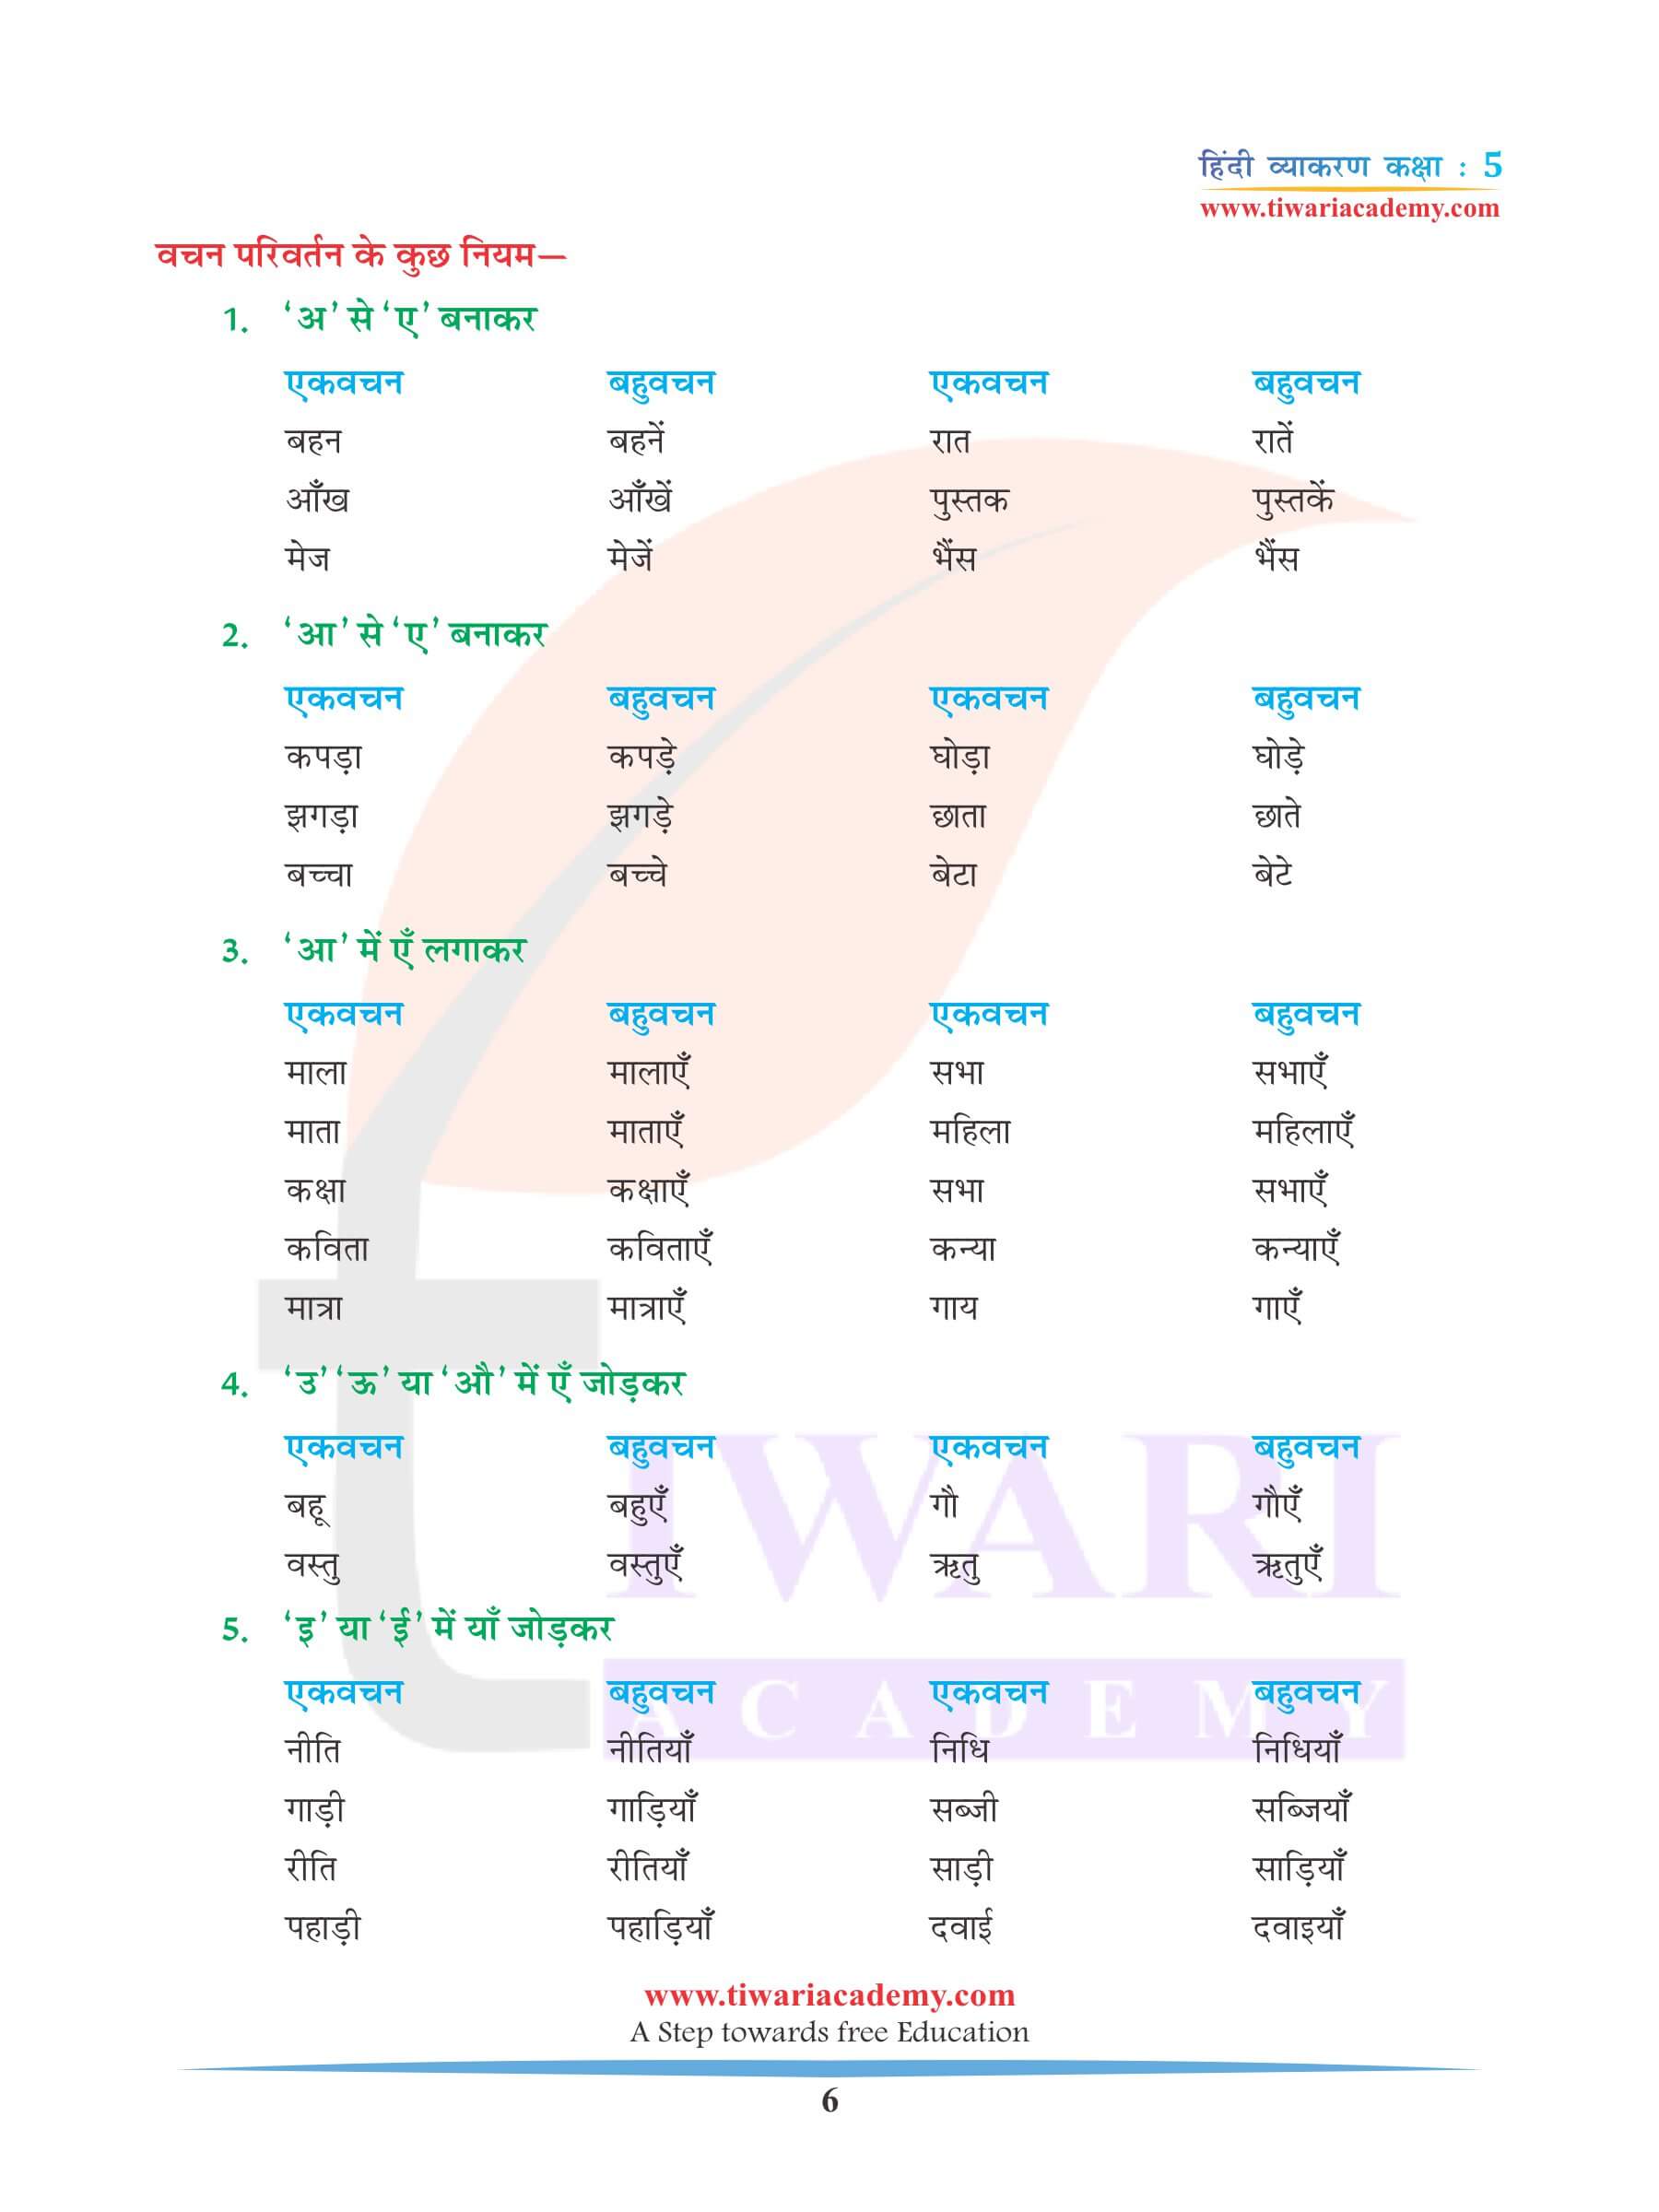 कक्षा 5 हिंदी व्याकरण अध्याय 4 वचन बदलो